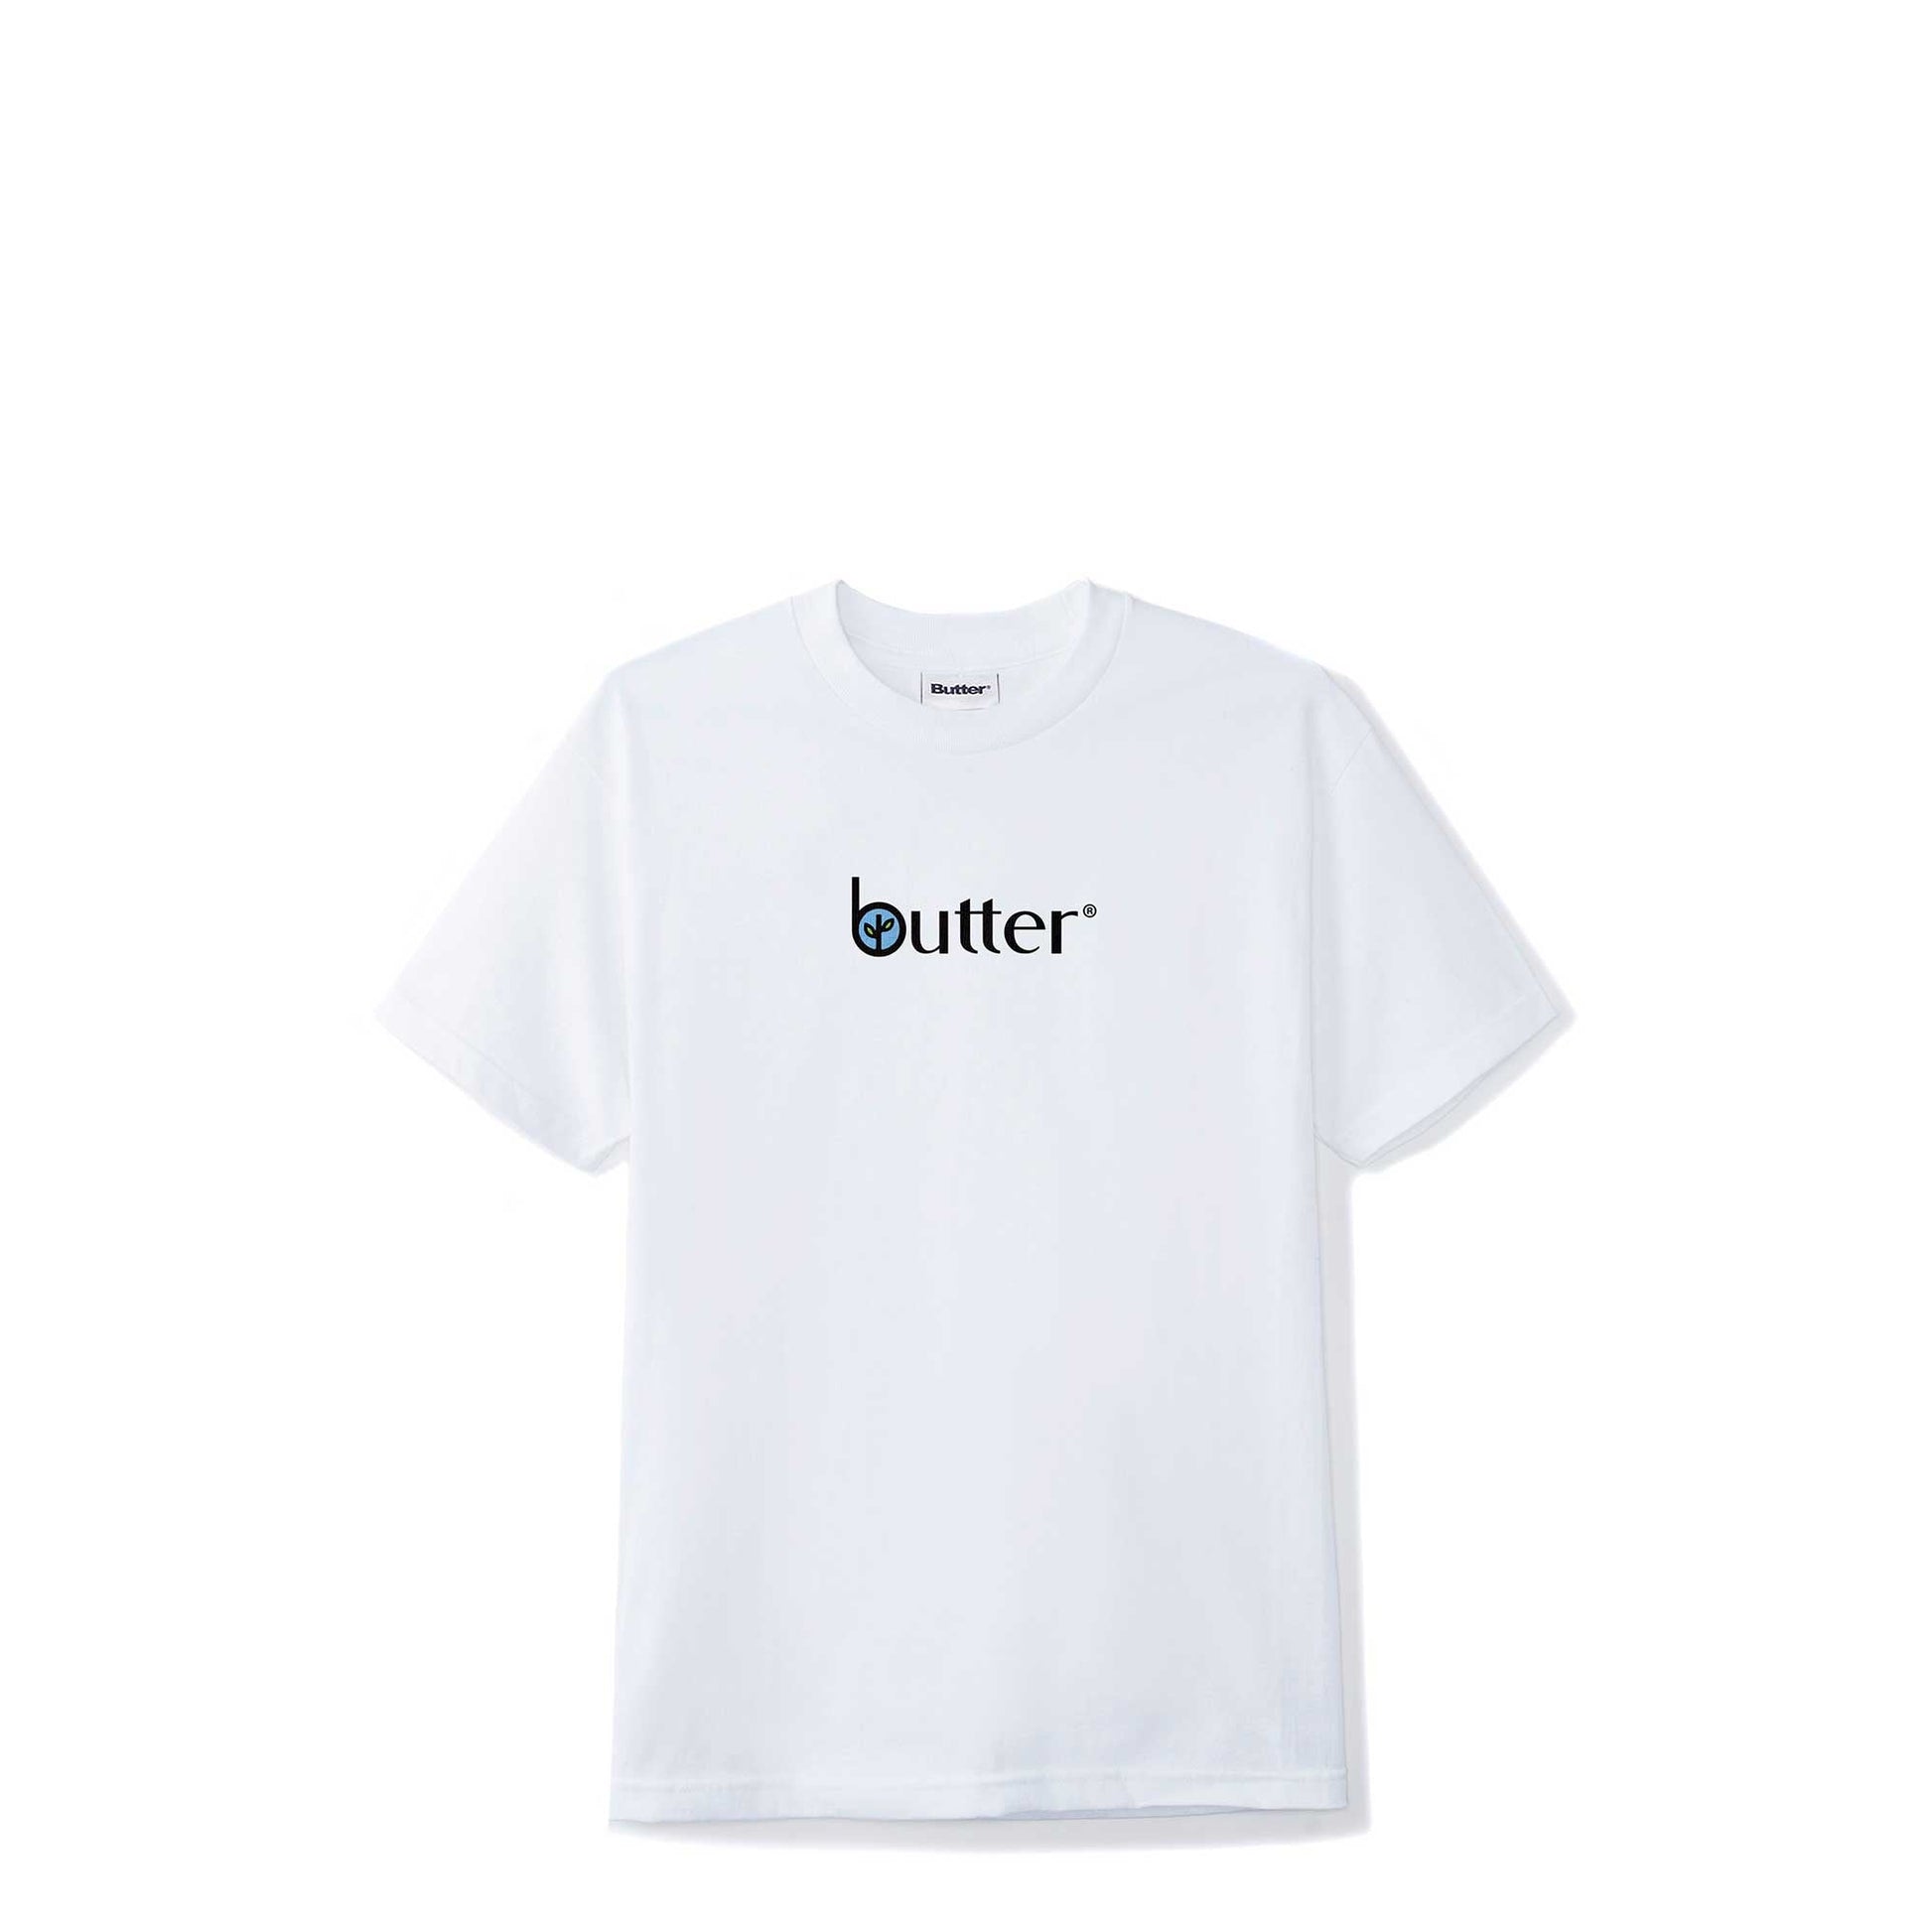 Butter Goods Leaf Classic Logo Tee, white - Tiki Room Skateboards - 1